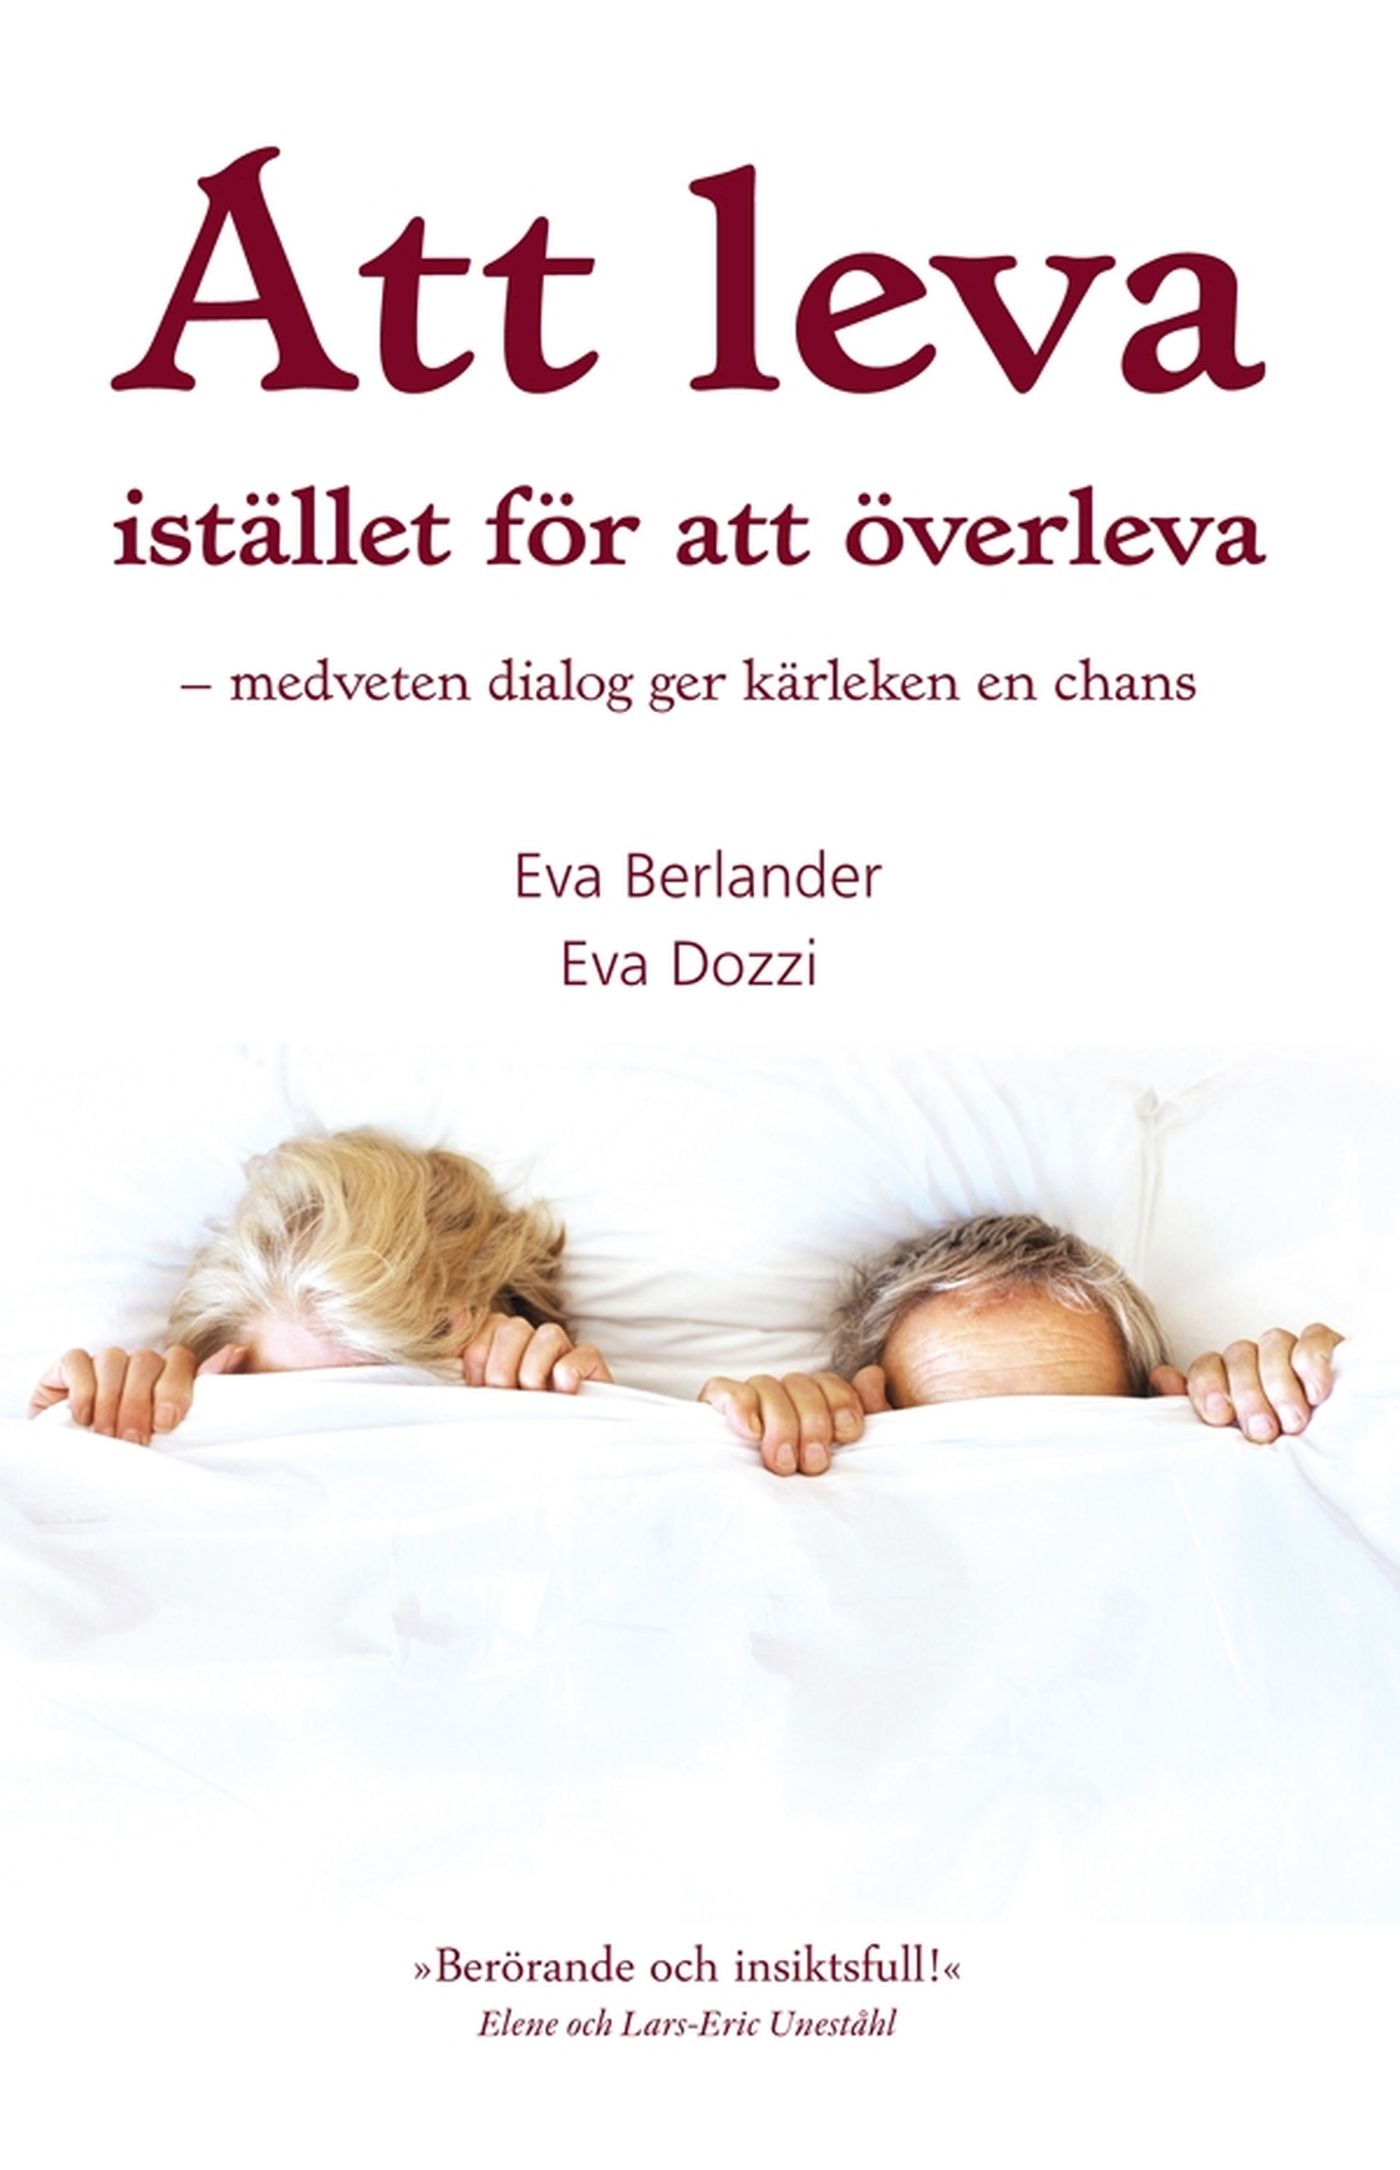 Att leva istället för att överleva, e-bog af Eva Berlander